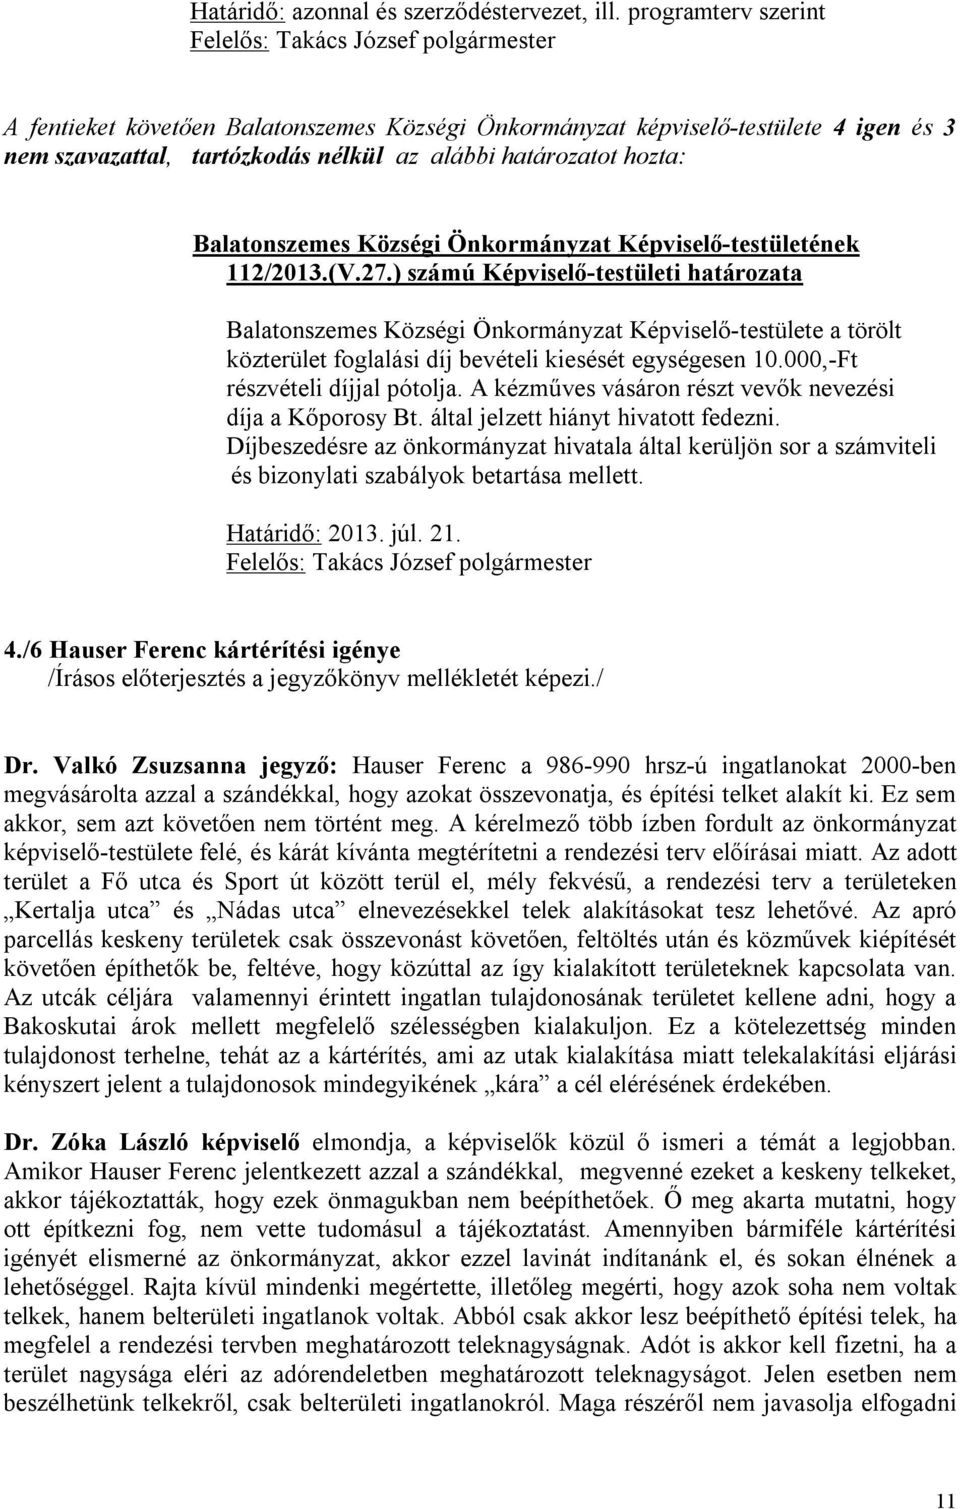 határozatot hozta: 112/2013.(V.27.) számú Képviselő-testületi határozata Balatonszemes Községi Önkormányzat Képviselő-testülete a törölt közterület foglalási díj bevételi kiesését egységesen 10.